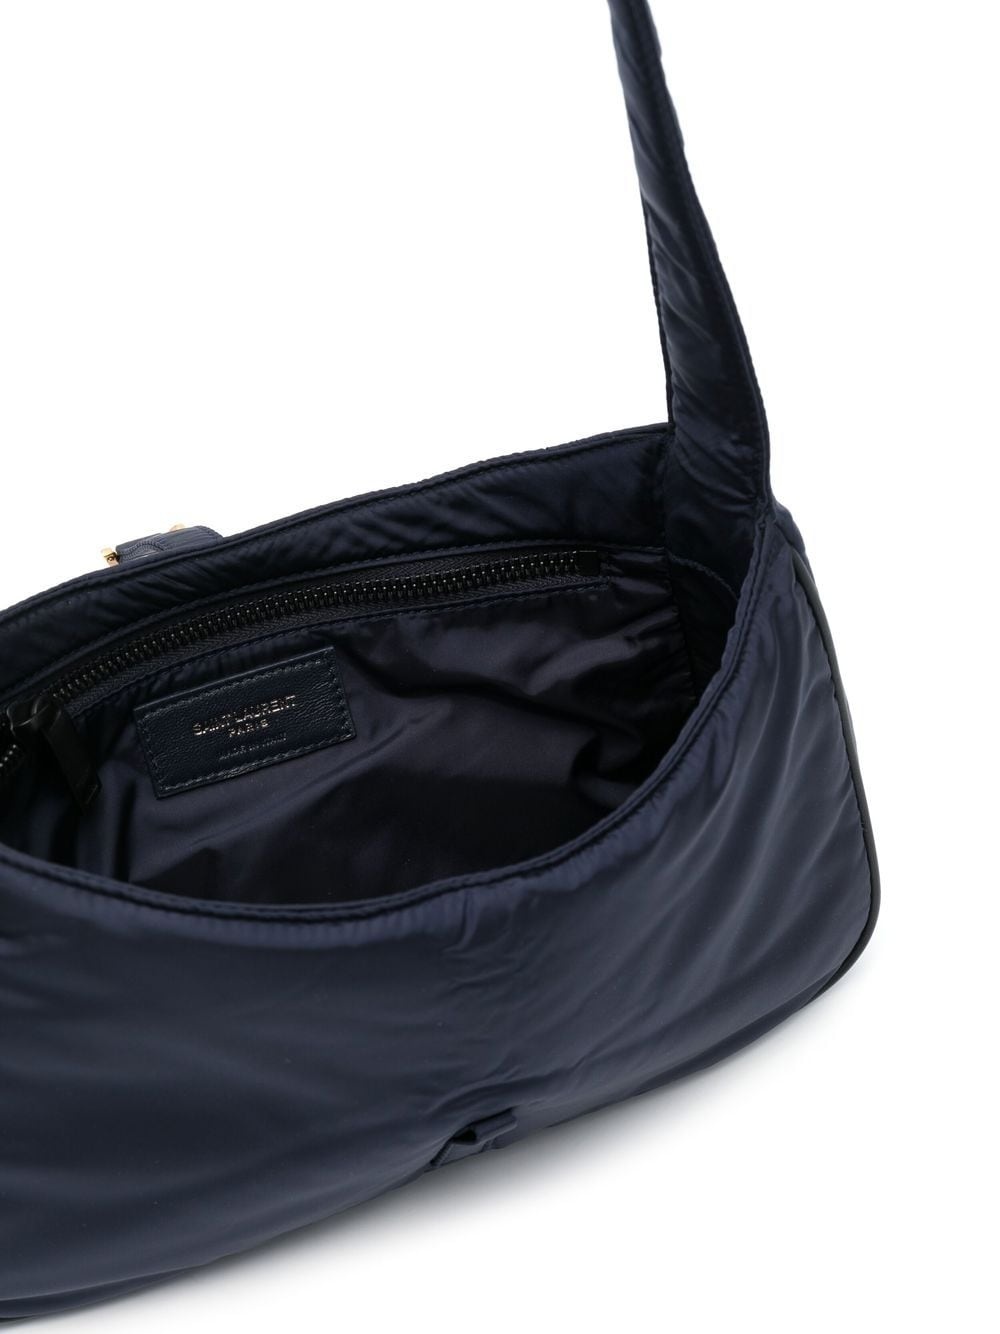 5A7 shoulder bag - 5